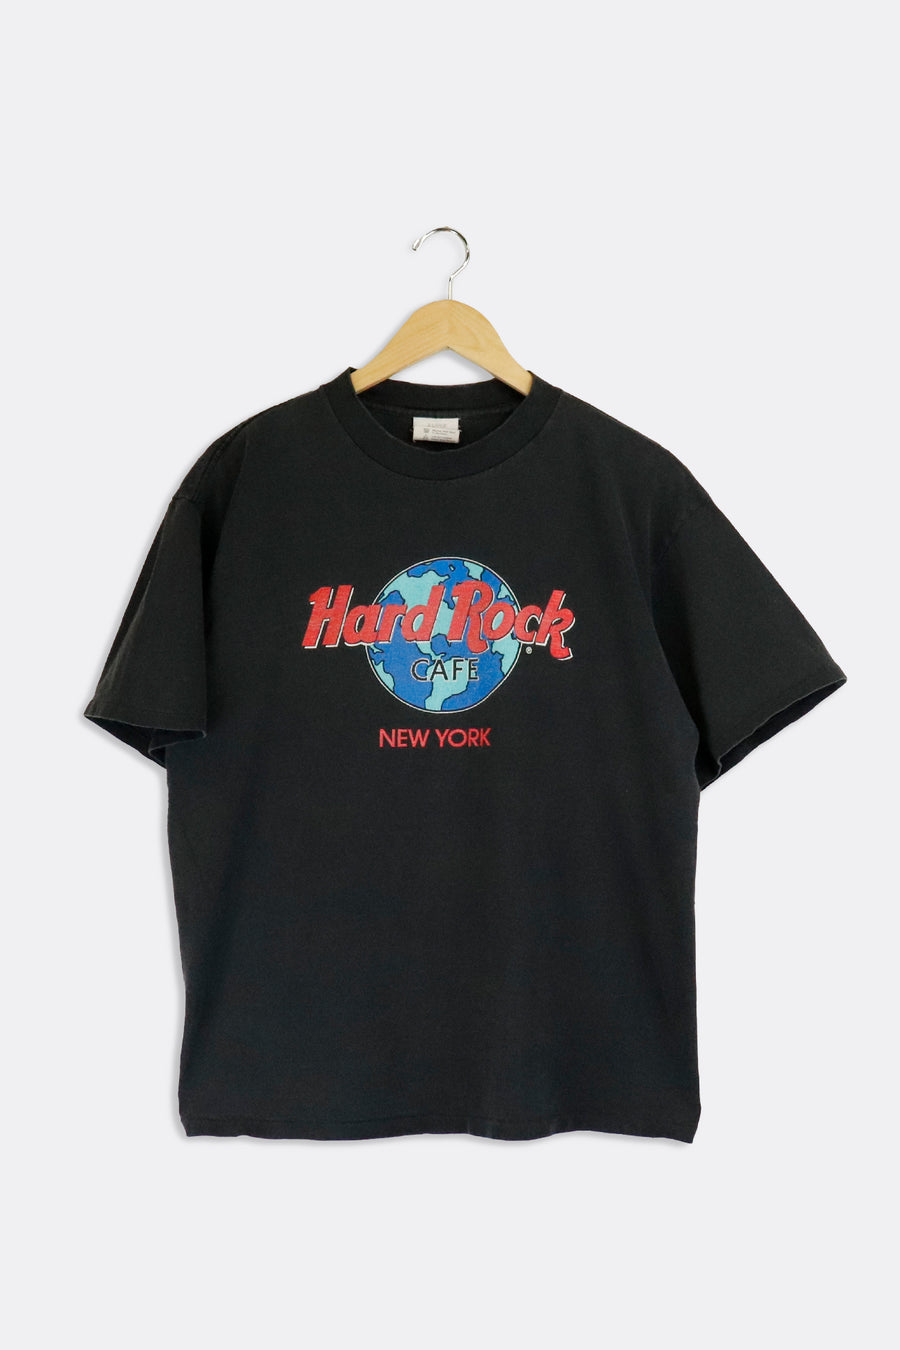 Vintage Hard Rock Cafe Black T Shirt M - XL